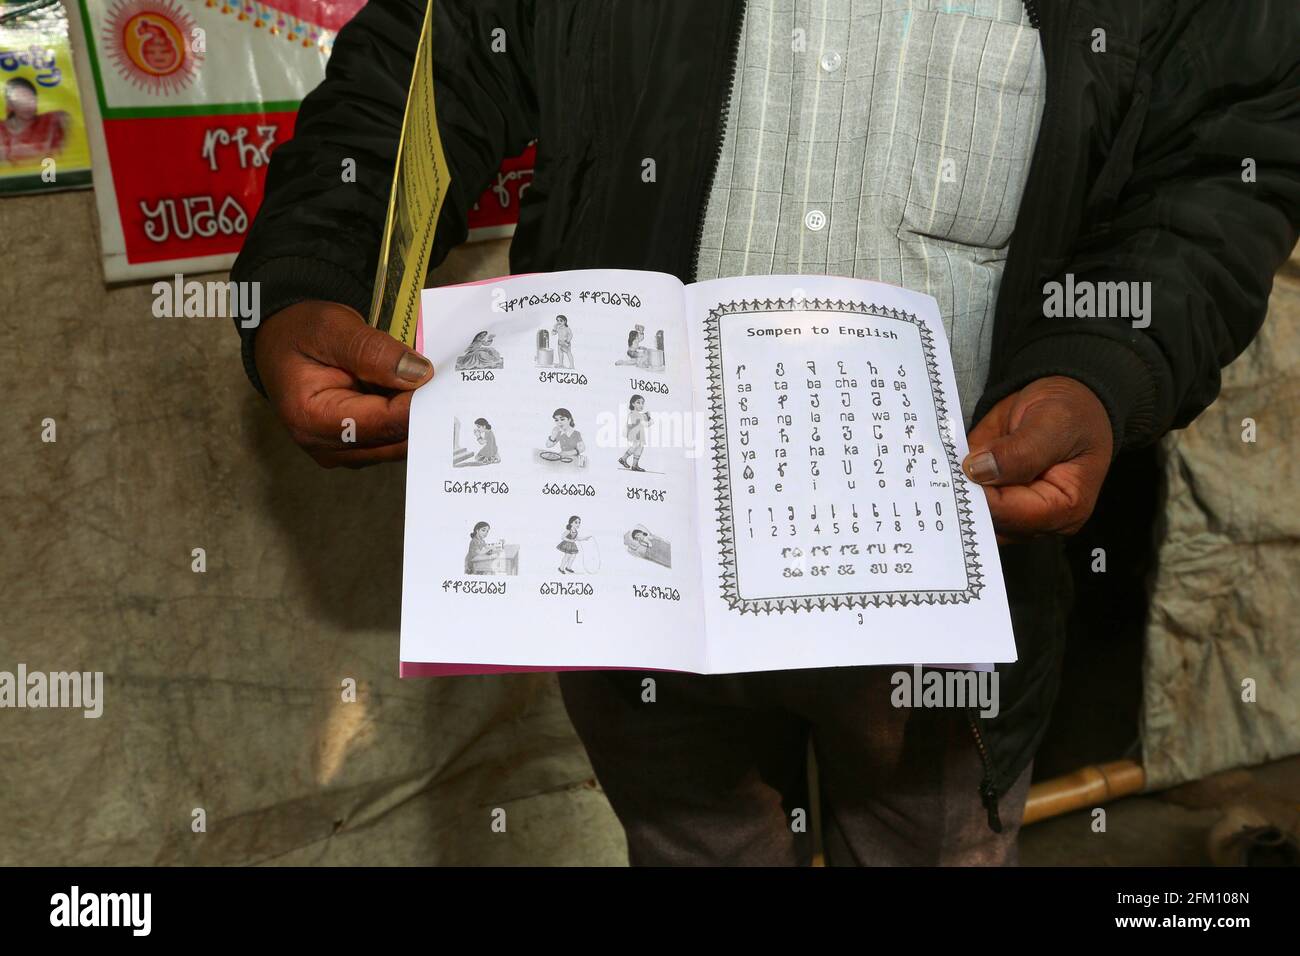 Ein Stammesmann, der im Dorf Sativada im Bezirk Srikakulam, Andhra Pradesh, Indien, ein Lehrbuch über Savara-Alphabete zeigt. SAVARA-STAMM Stockfoto